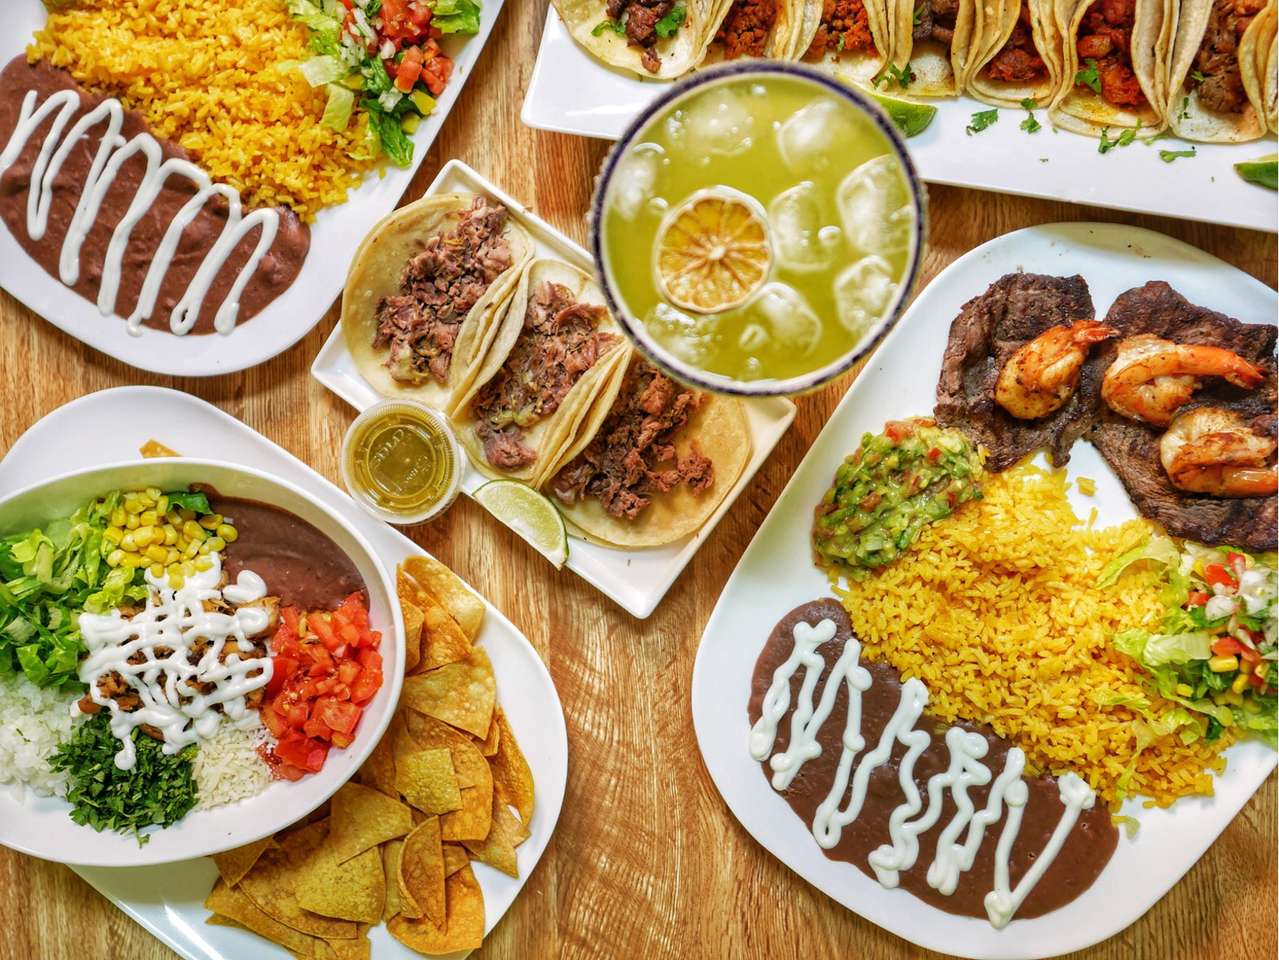 Еда в техасско-мексиканском стиле пазл онлайн